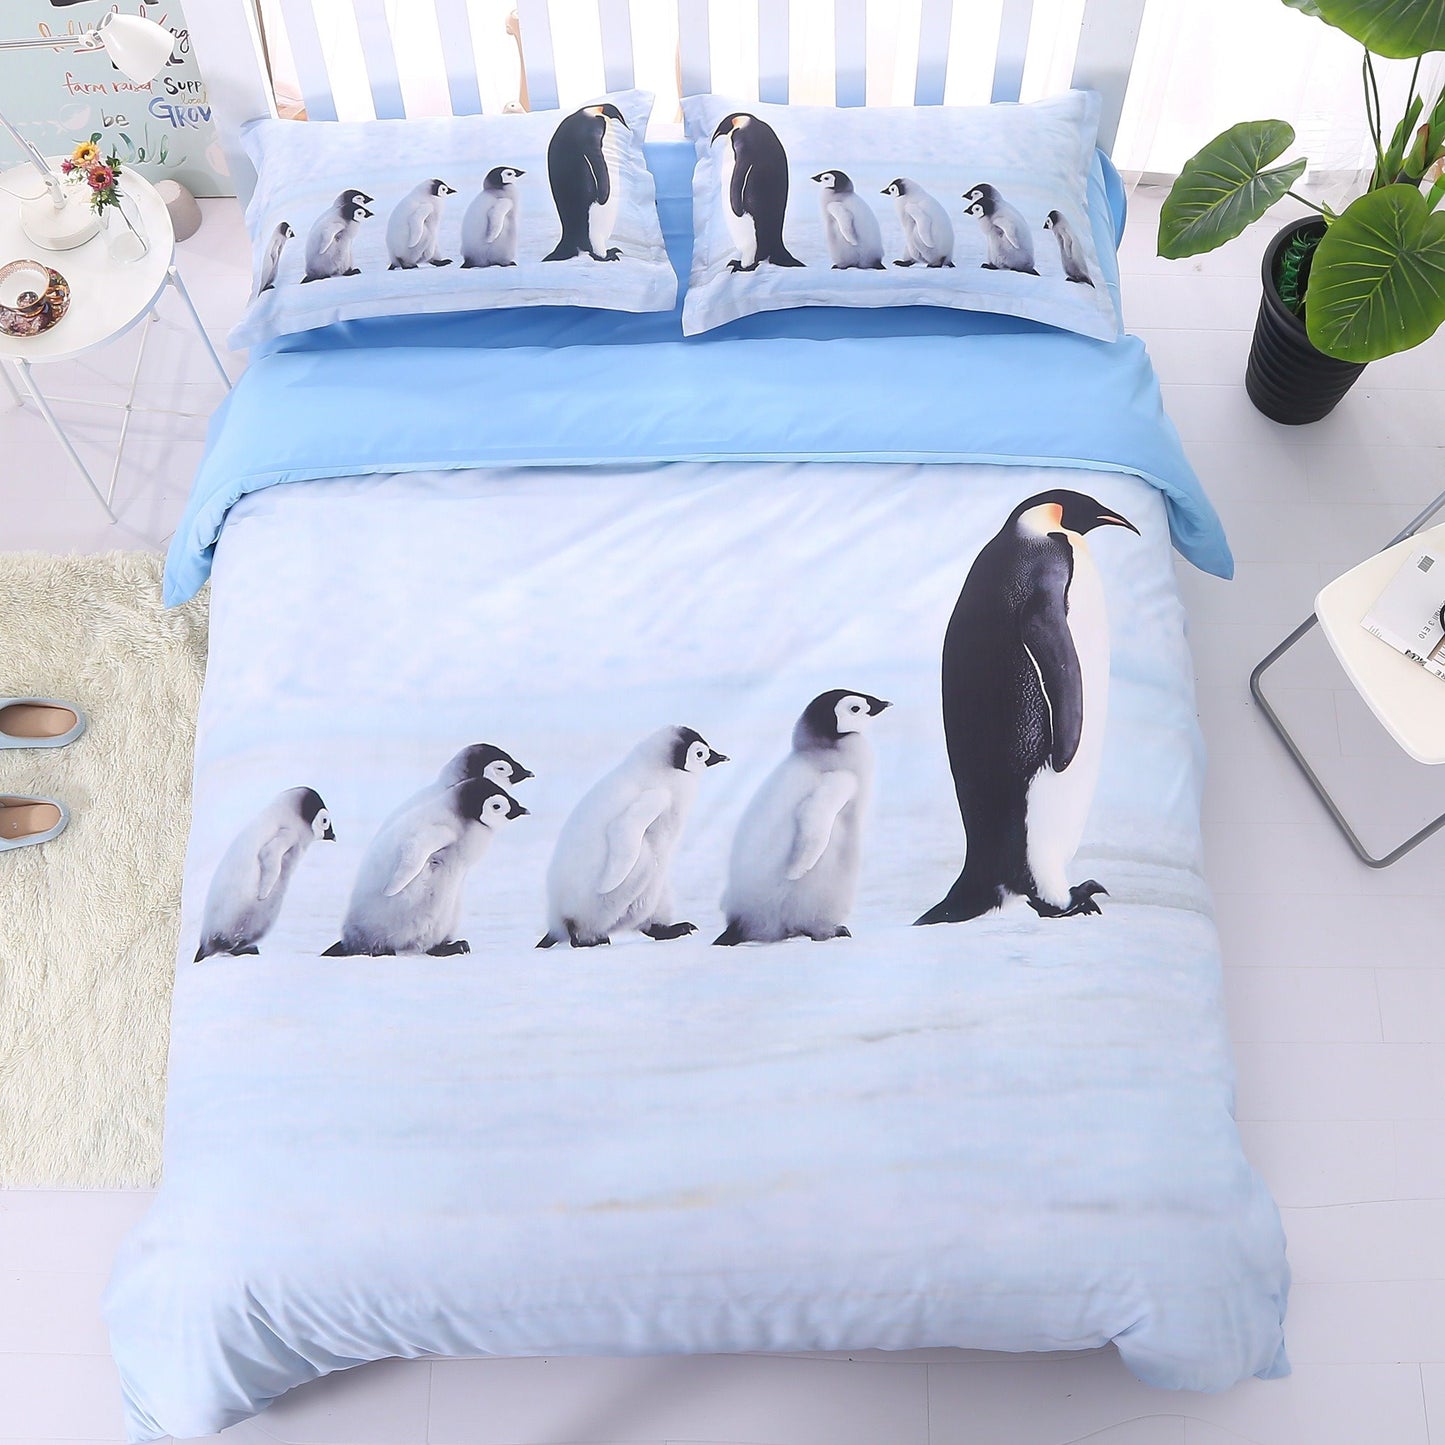 Juego de cama con estampado 3D de un grupo de lindos pingüinos, juego de edredón azul claro de 5 piezas